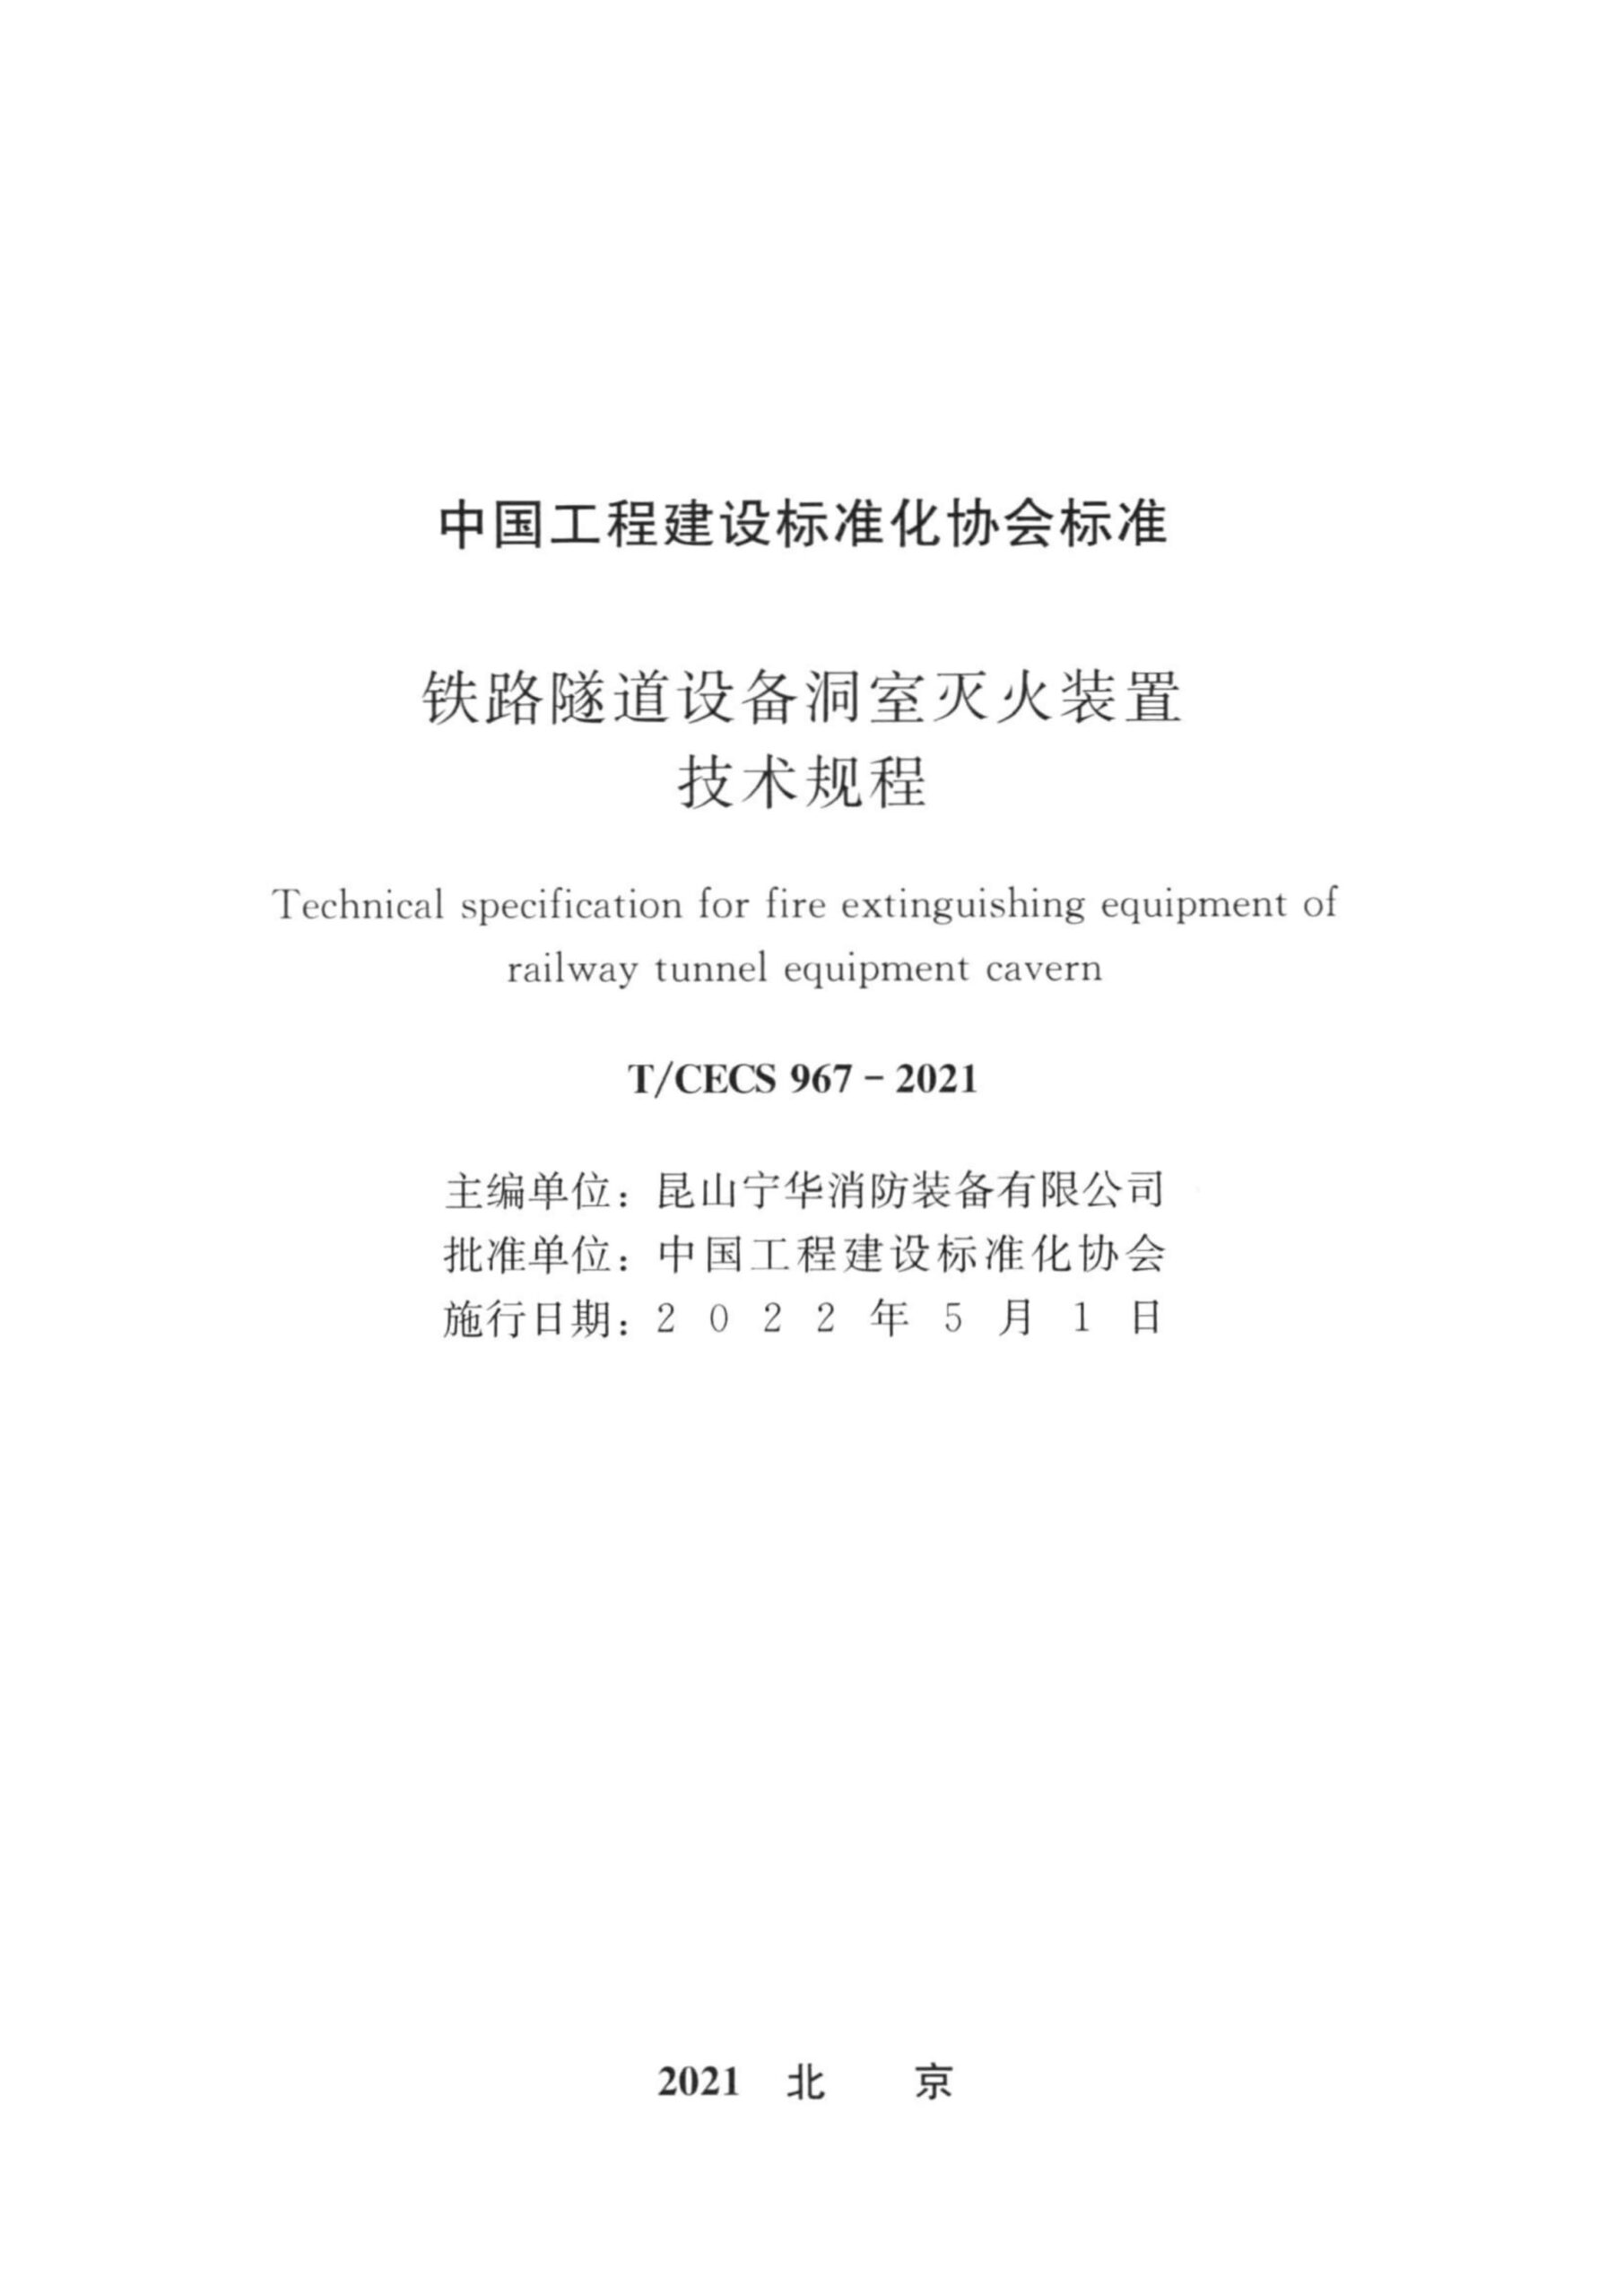 T/CECS 967-2021 铁路隧道设备洞室灭火装置技术规程